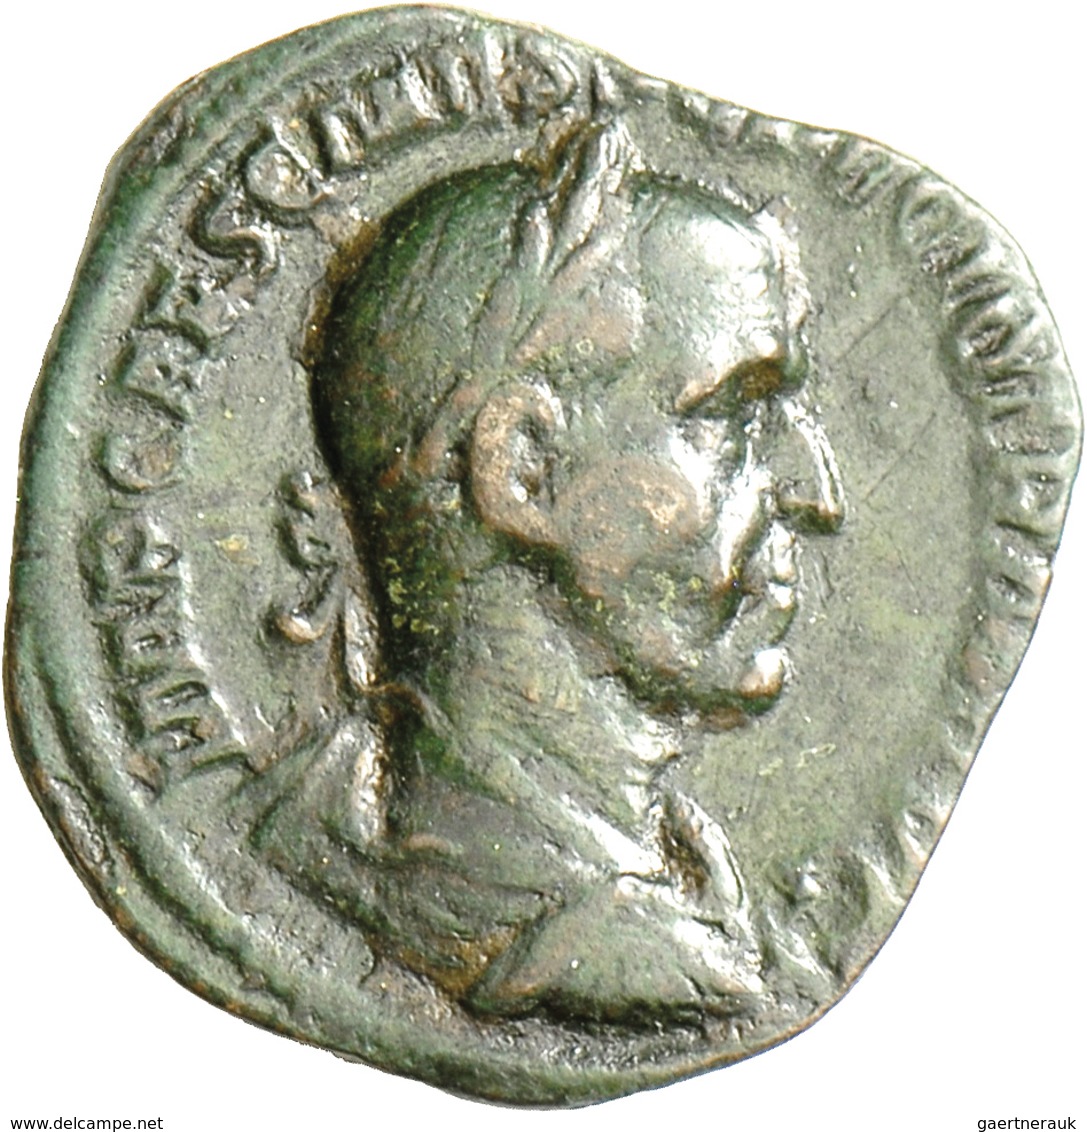 Traianus Decius (249 - 251): Traianus Decius 249-251: Sesterz, Rom, 15,54 G, RIC 117(b), Sehr Schön. - Der Soldatenkaiser (die Militärkrise) (235 / 284)